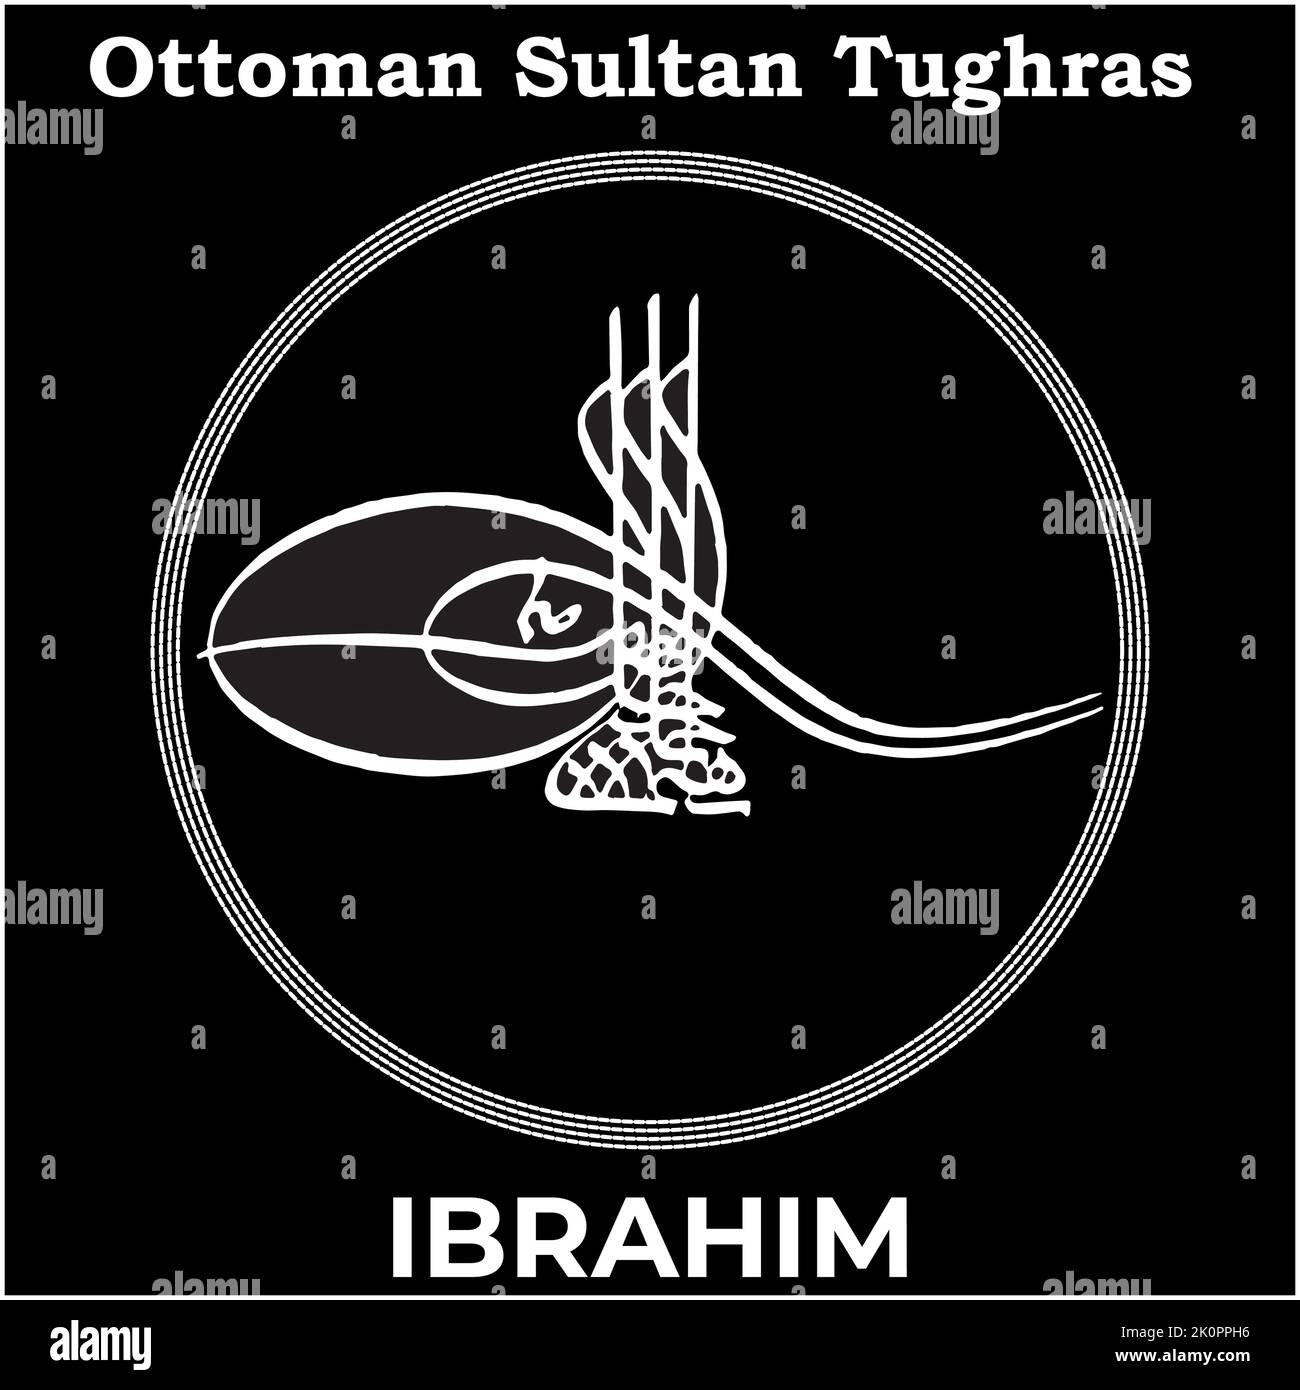 Immagine vettoriale con firma Tughra del Settecento sultano Ottomano Ibrahim, Tughra di Ibrahim con sfondo nero. Illustrazione Vettoriale